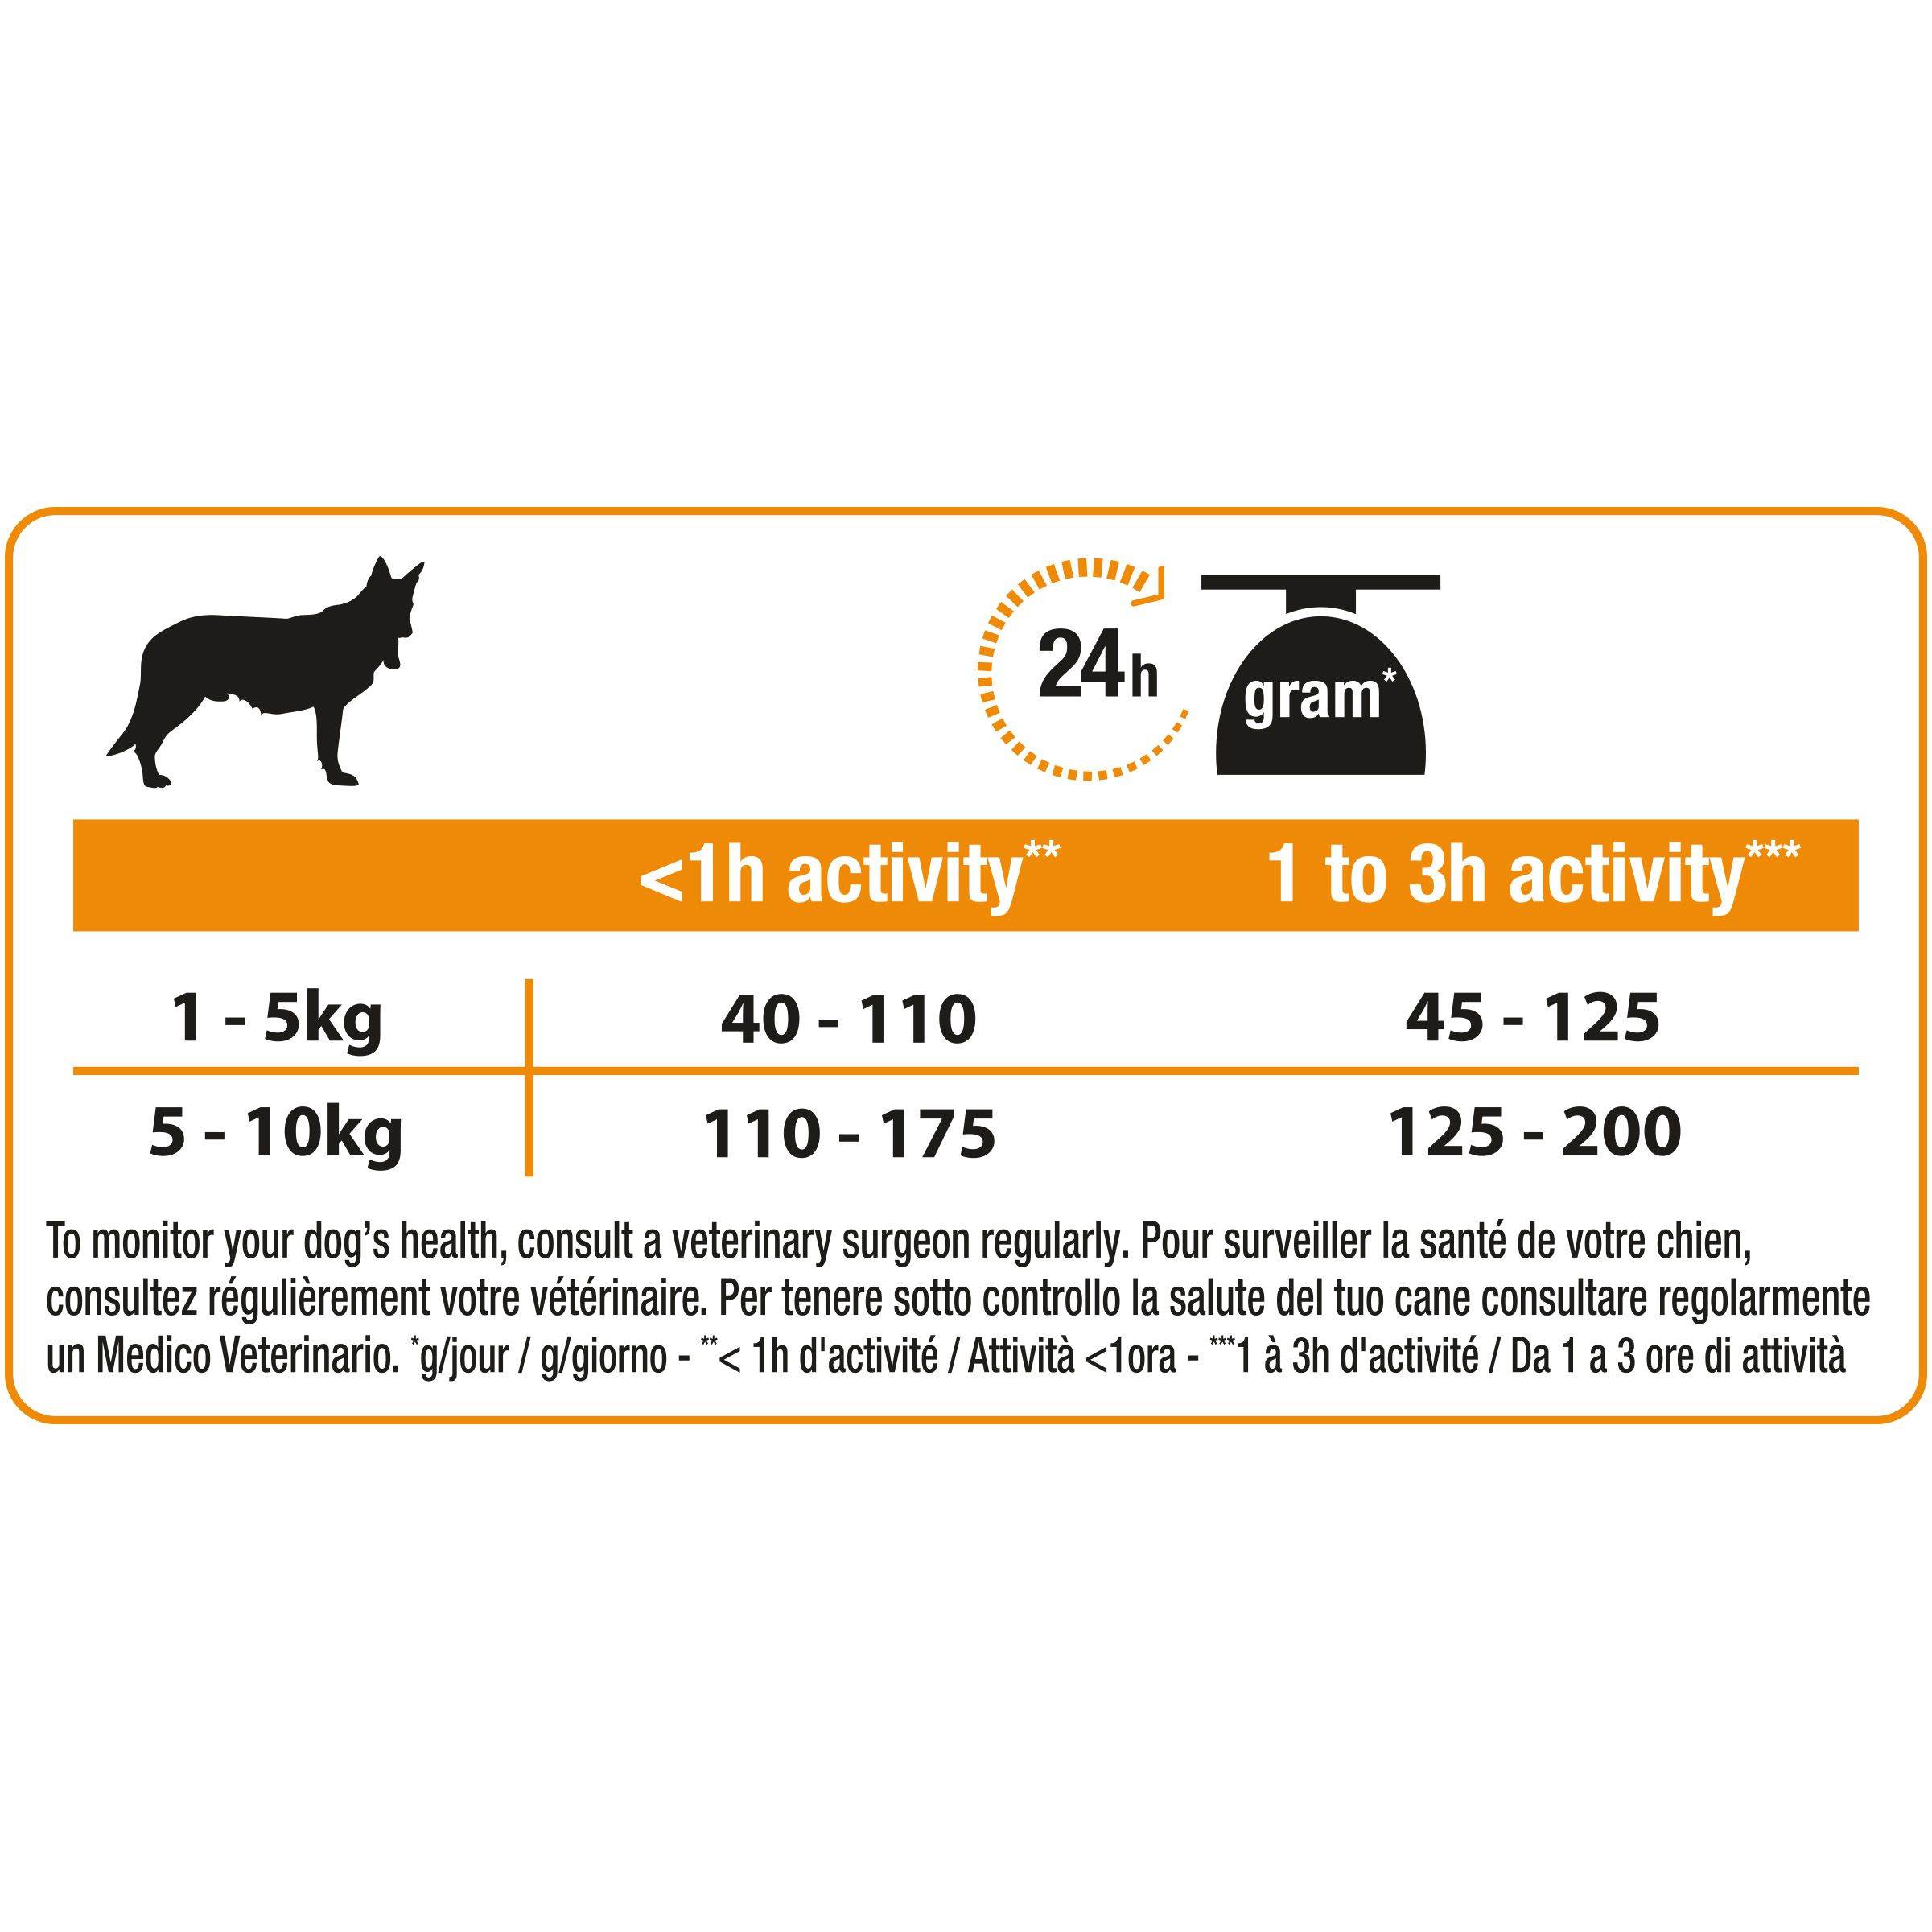 Характеристика кормов для собак pro plan с отзывами ветеринаров и заводчиков